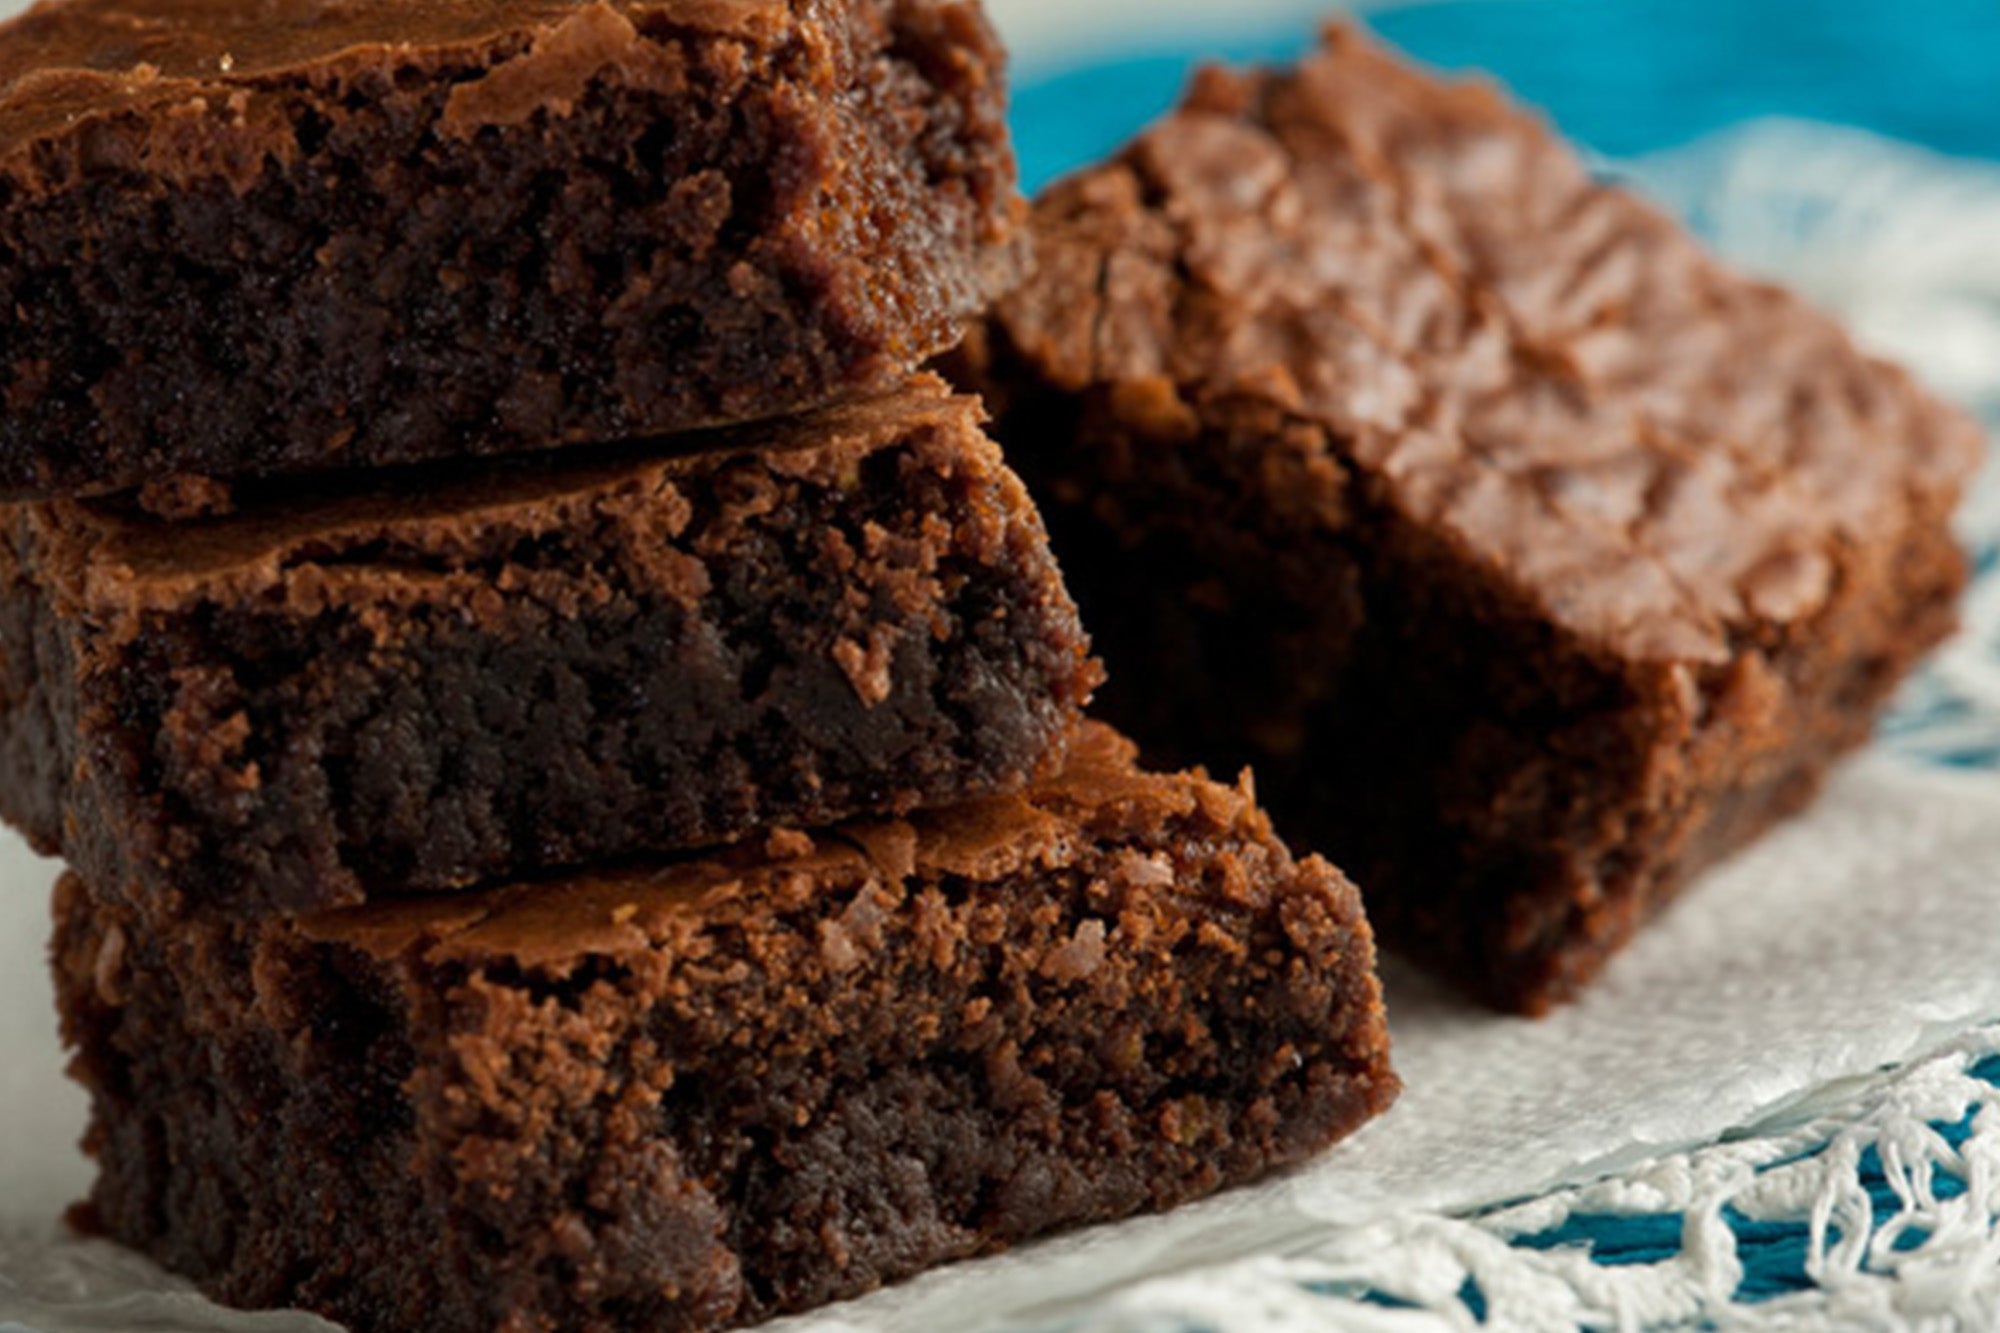 Receta de brownie delicioso ¡preparalo! | Recetas Nestlé